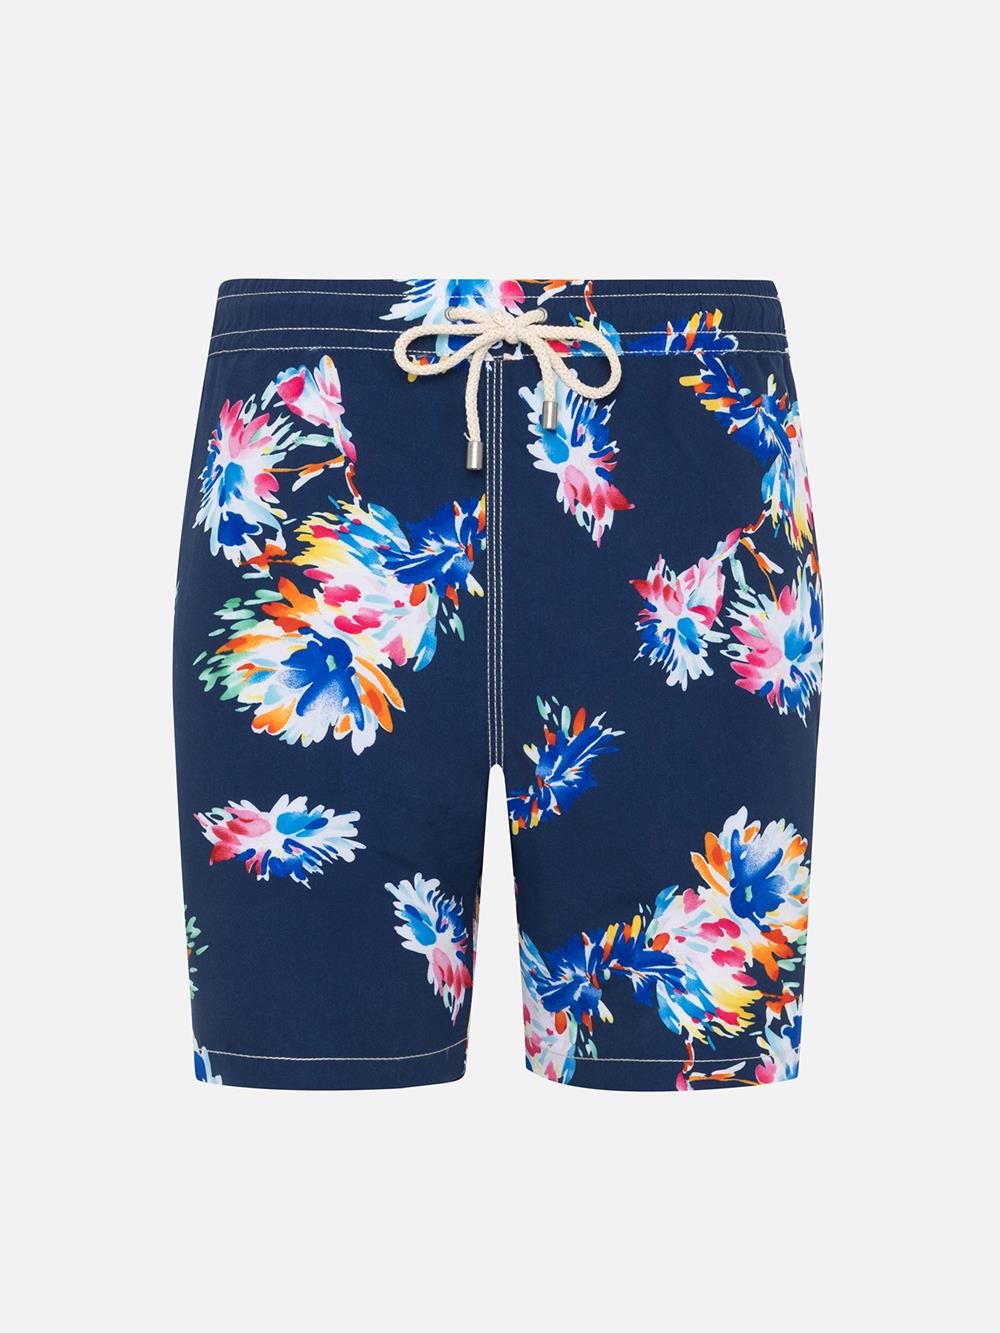 Sausalito navy flowers swimwear